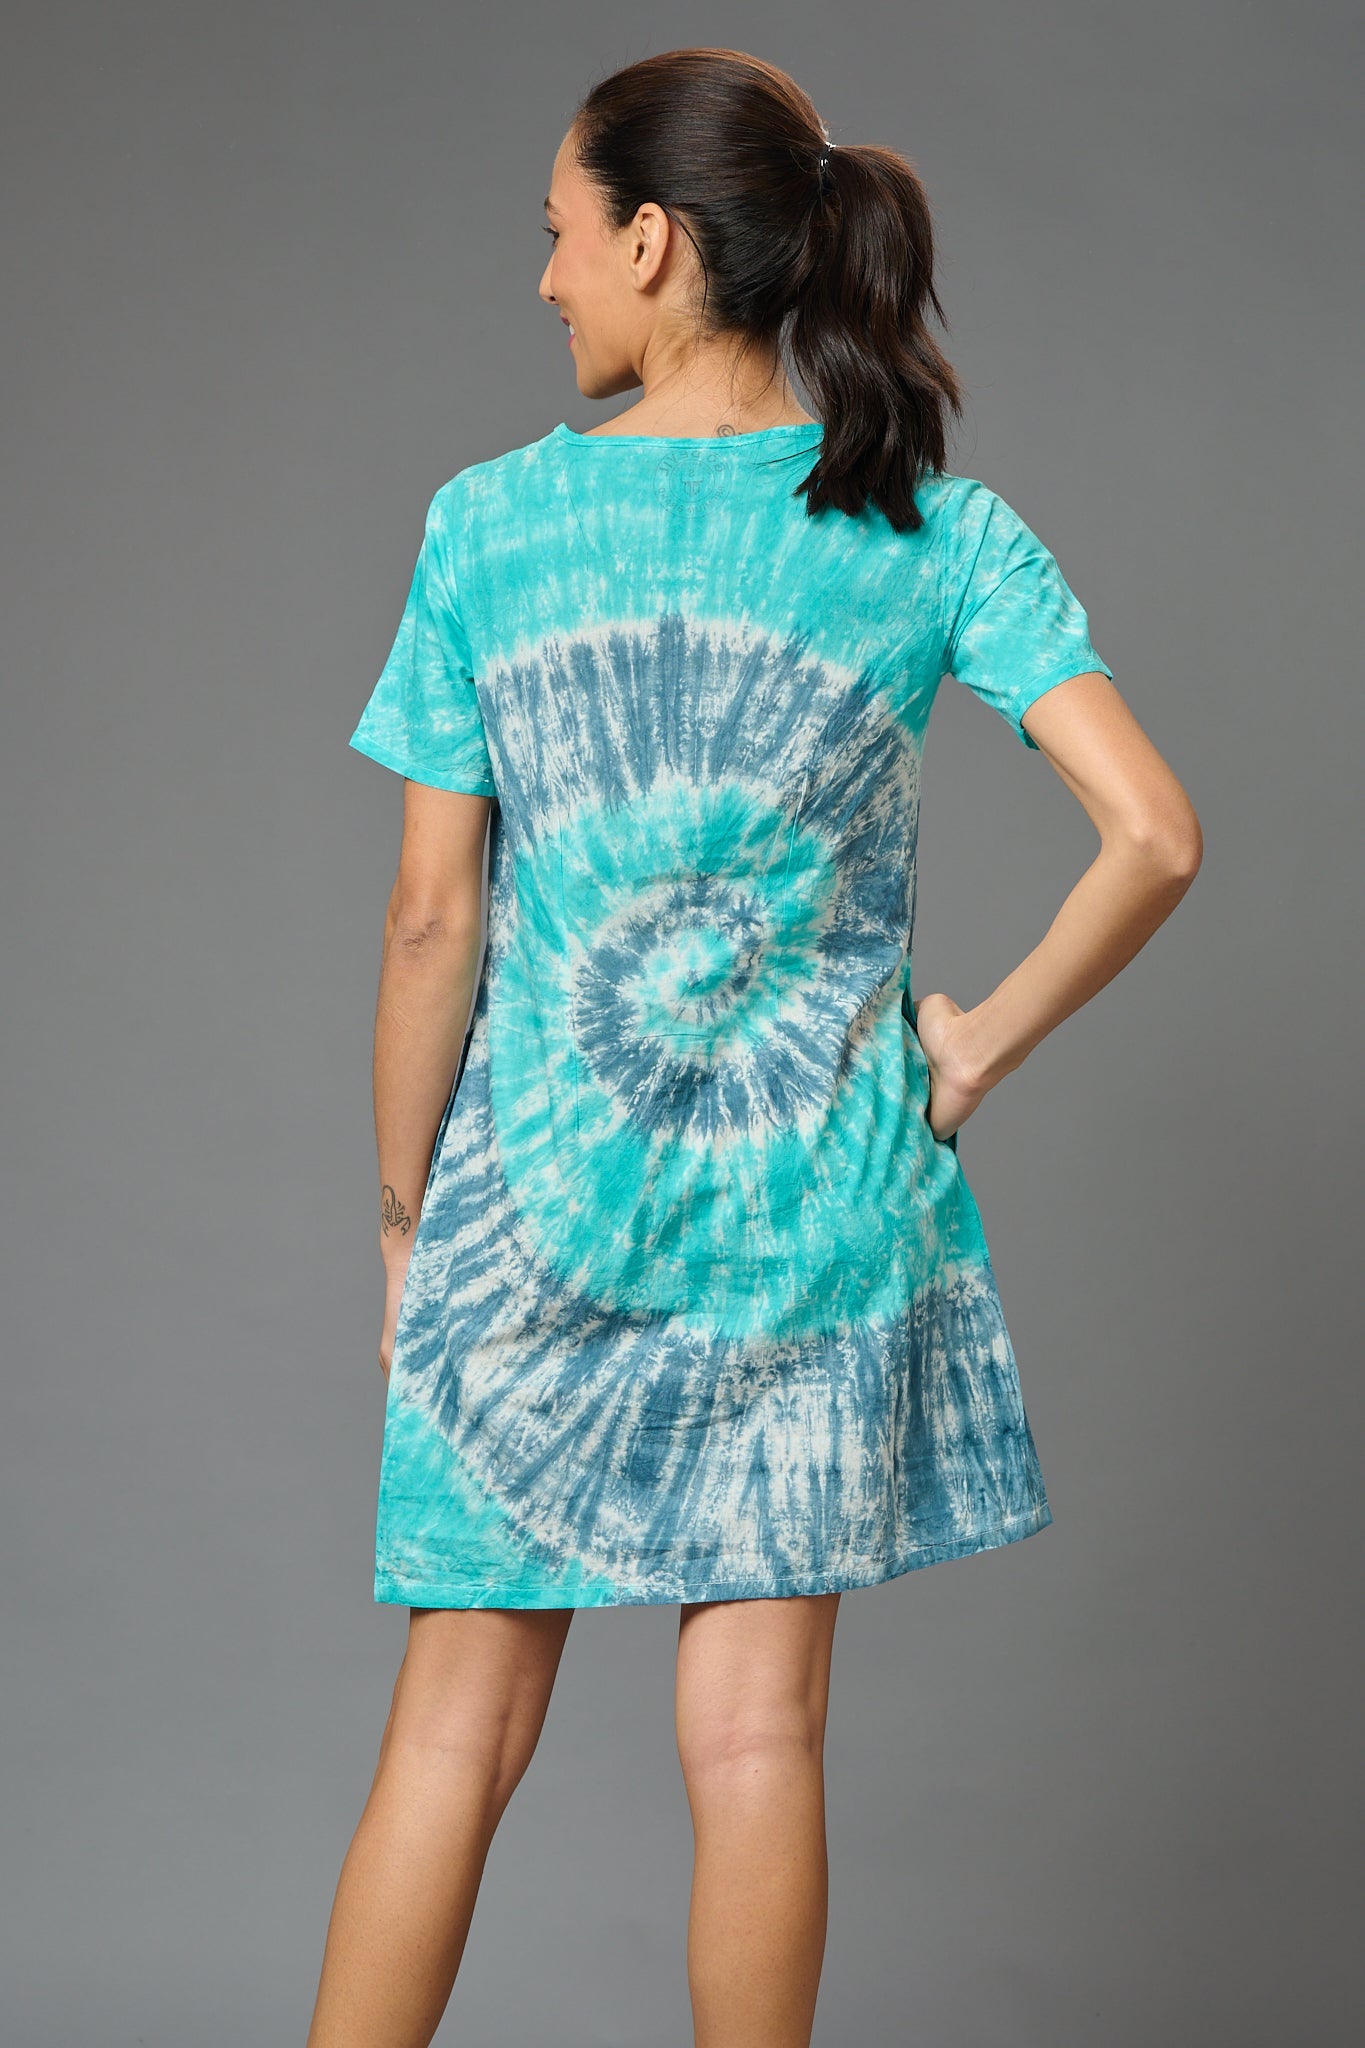 Spiral Design Dress for Women - Go Devil